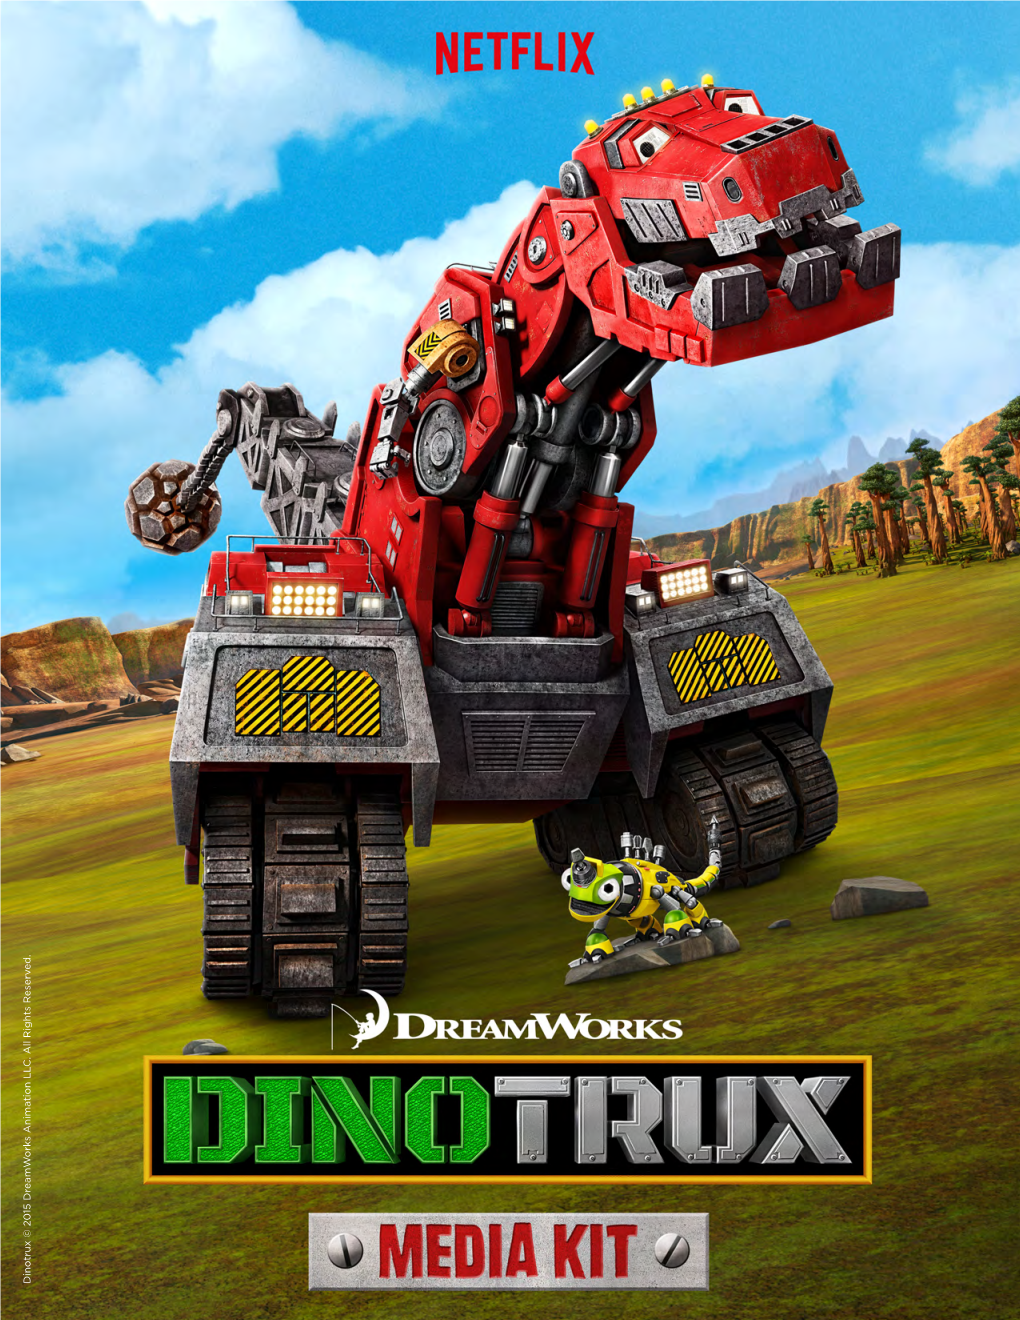 Dinotrux © 20 15 Dreamw Orks Anima Tion LL C. All Rights R Eserv